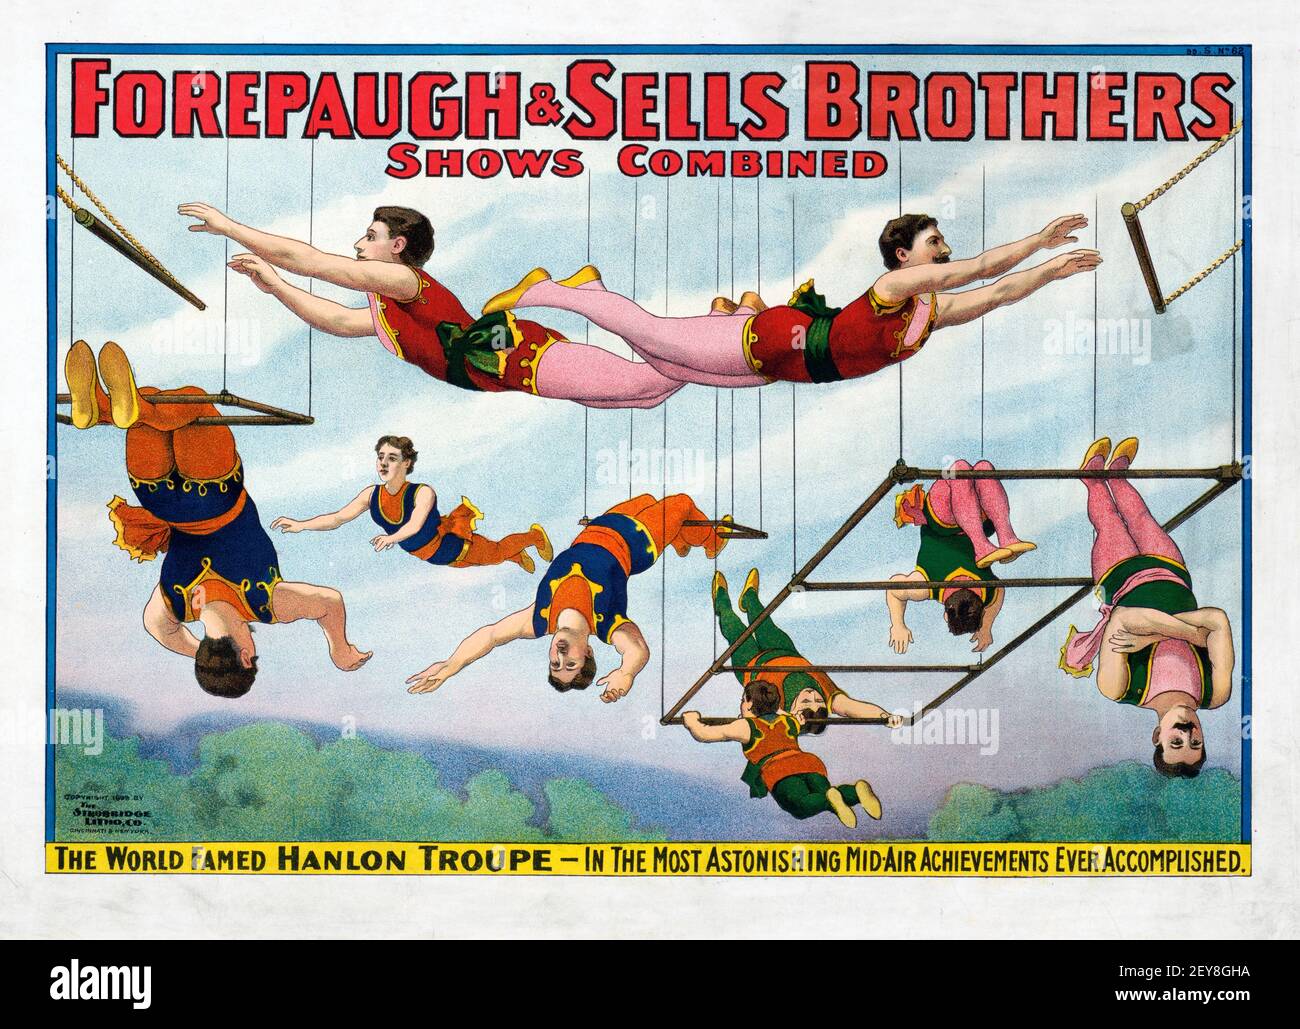 Forepaugh & Sells Brothers, Shows kombiniert. Trapeze. Zirkusposter, antik und im alten Stil. Die Weltberühmte Hanlon Truppe. Stockfoto